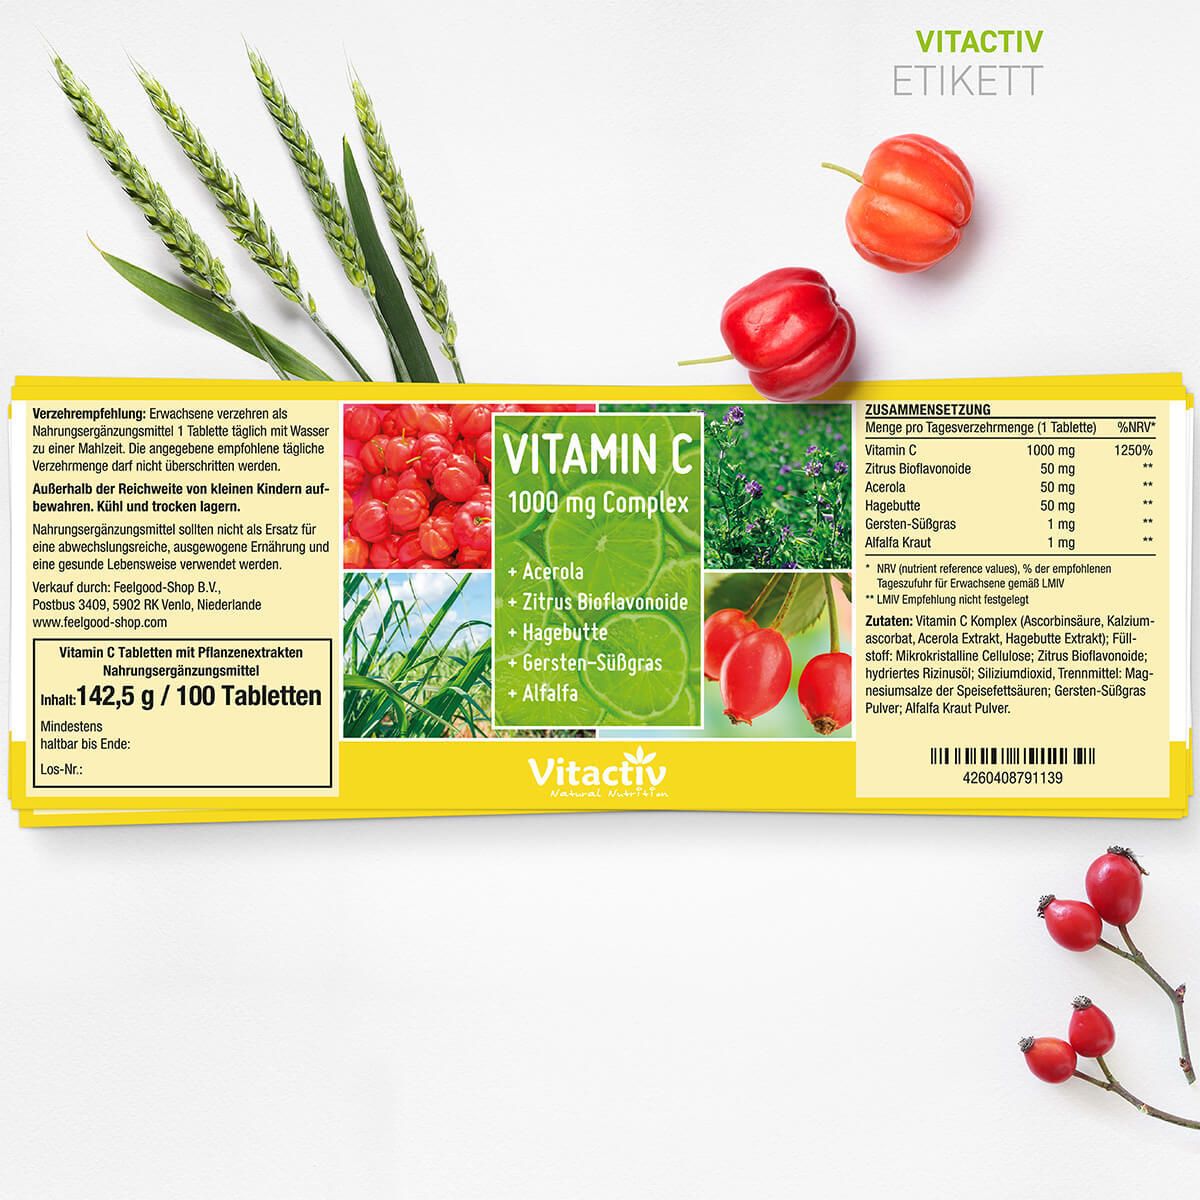 Vitactiv VITAMIN C 1000 mg Complex + Acerola